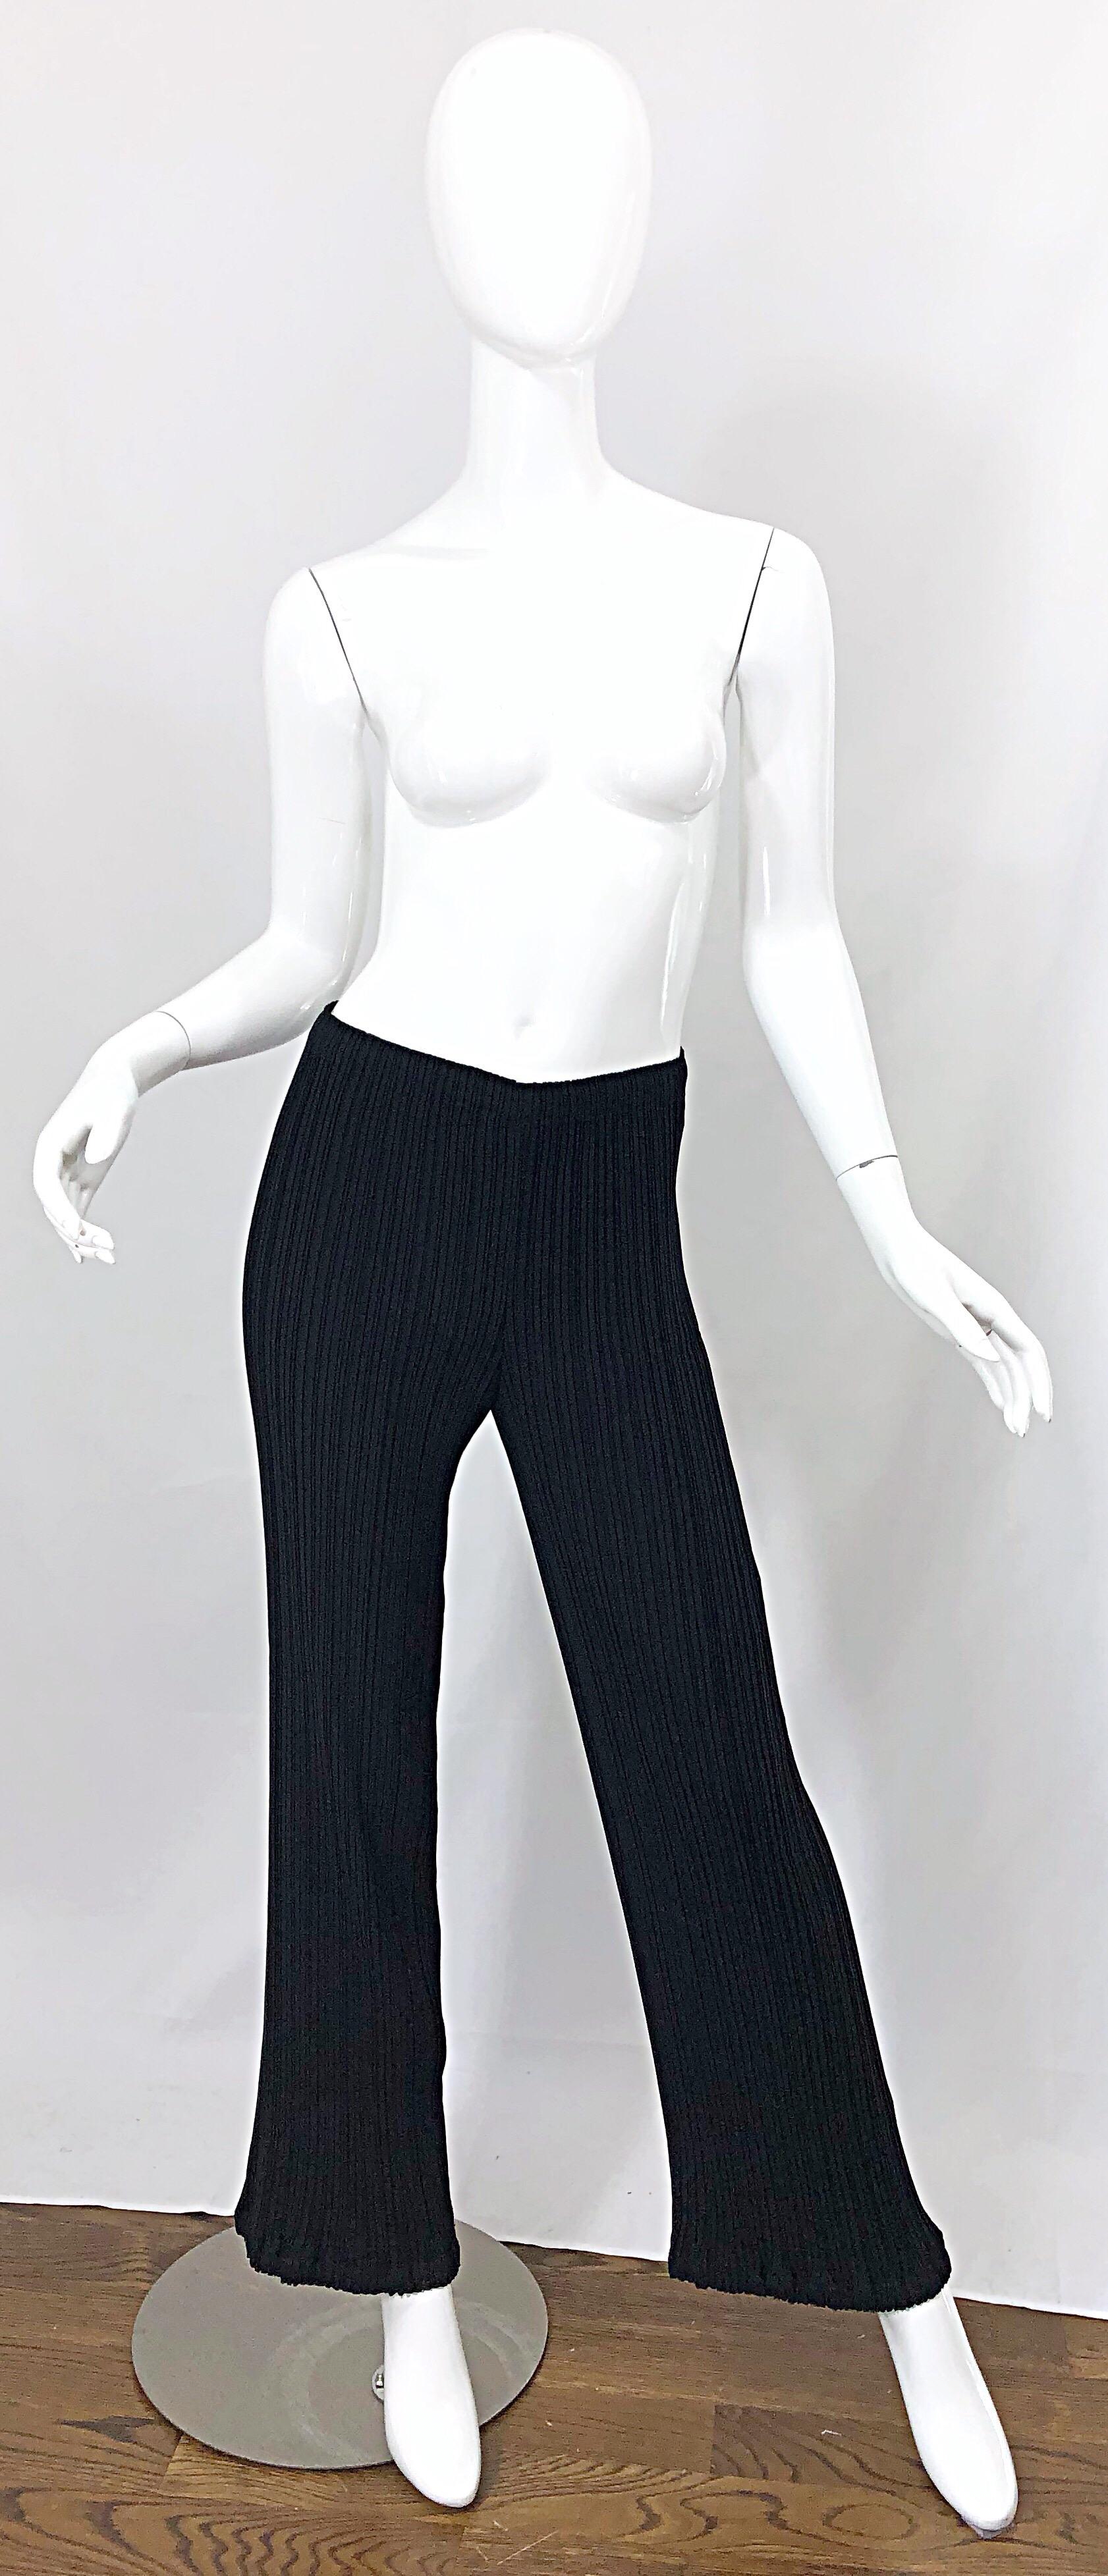 Klassische, aber stilvolle ISSEY MIYAKE Hose mit weitem Bein in Schwarz aus den 1990er Jahren! Mit den charakteristischen Falten, die so viel Komfort bieten, ohne dabei an Stil zu verlieren. Superschmeichelhafte Passform. Der elastische Bund macht